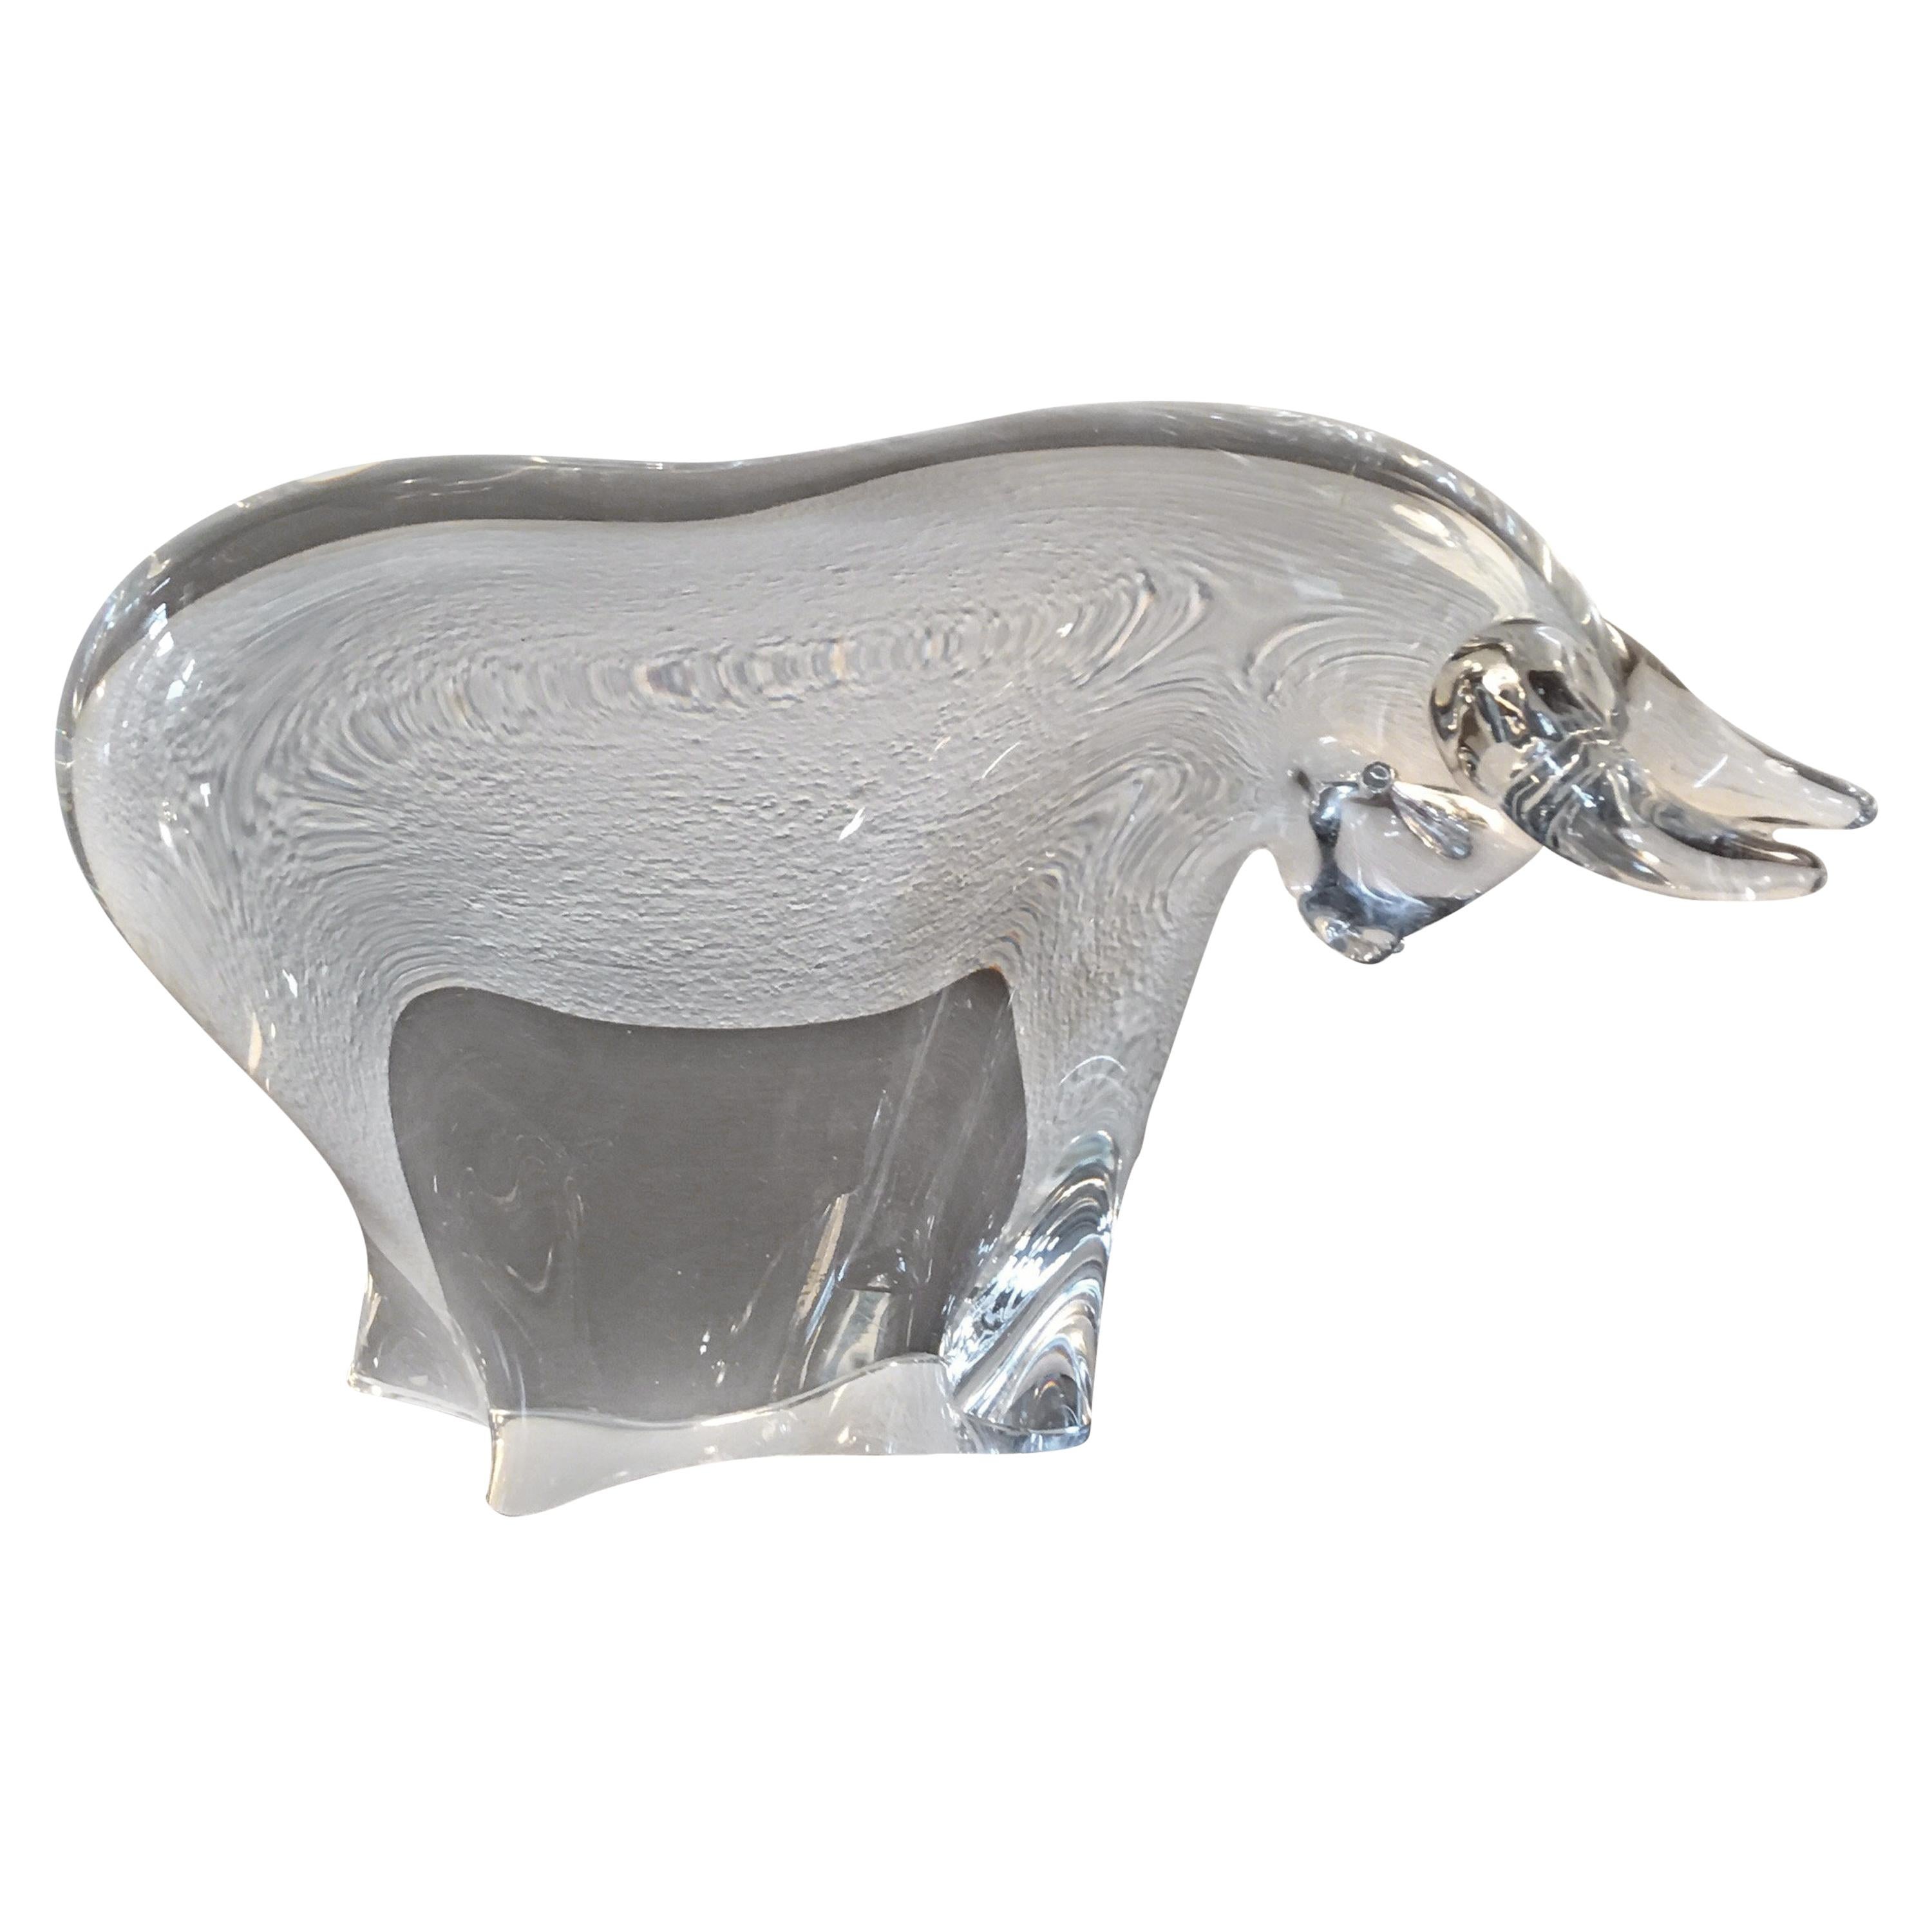 Konstglas Sweden Art Glass Bull